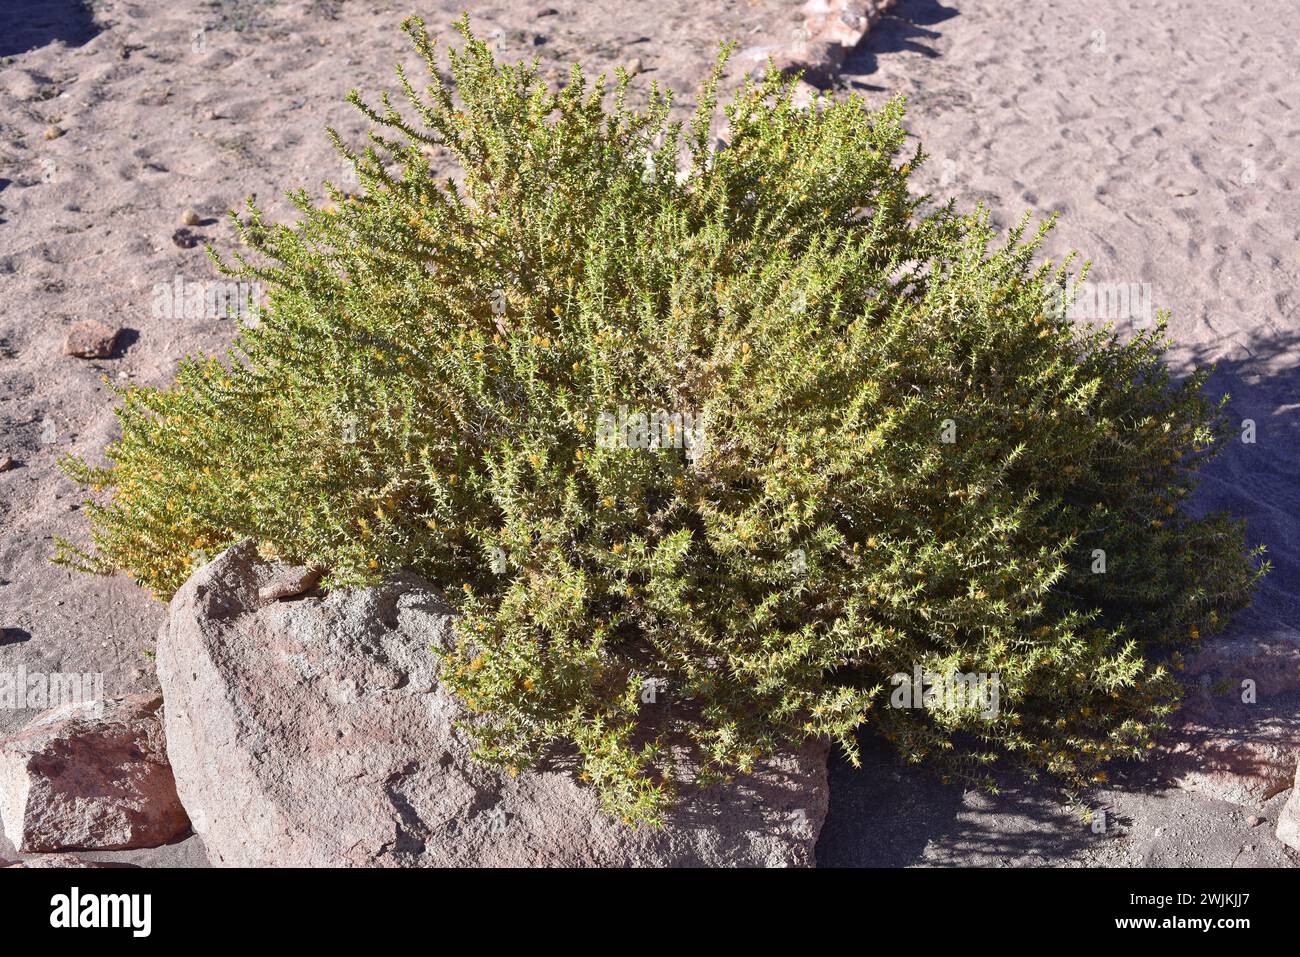 Lengua de gallo or rezongon (Chuquiraga atacamensis) is a spiny shrub native to northern Chile. This photo was taken in Atacama Desert, Chile. Stock Photo